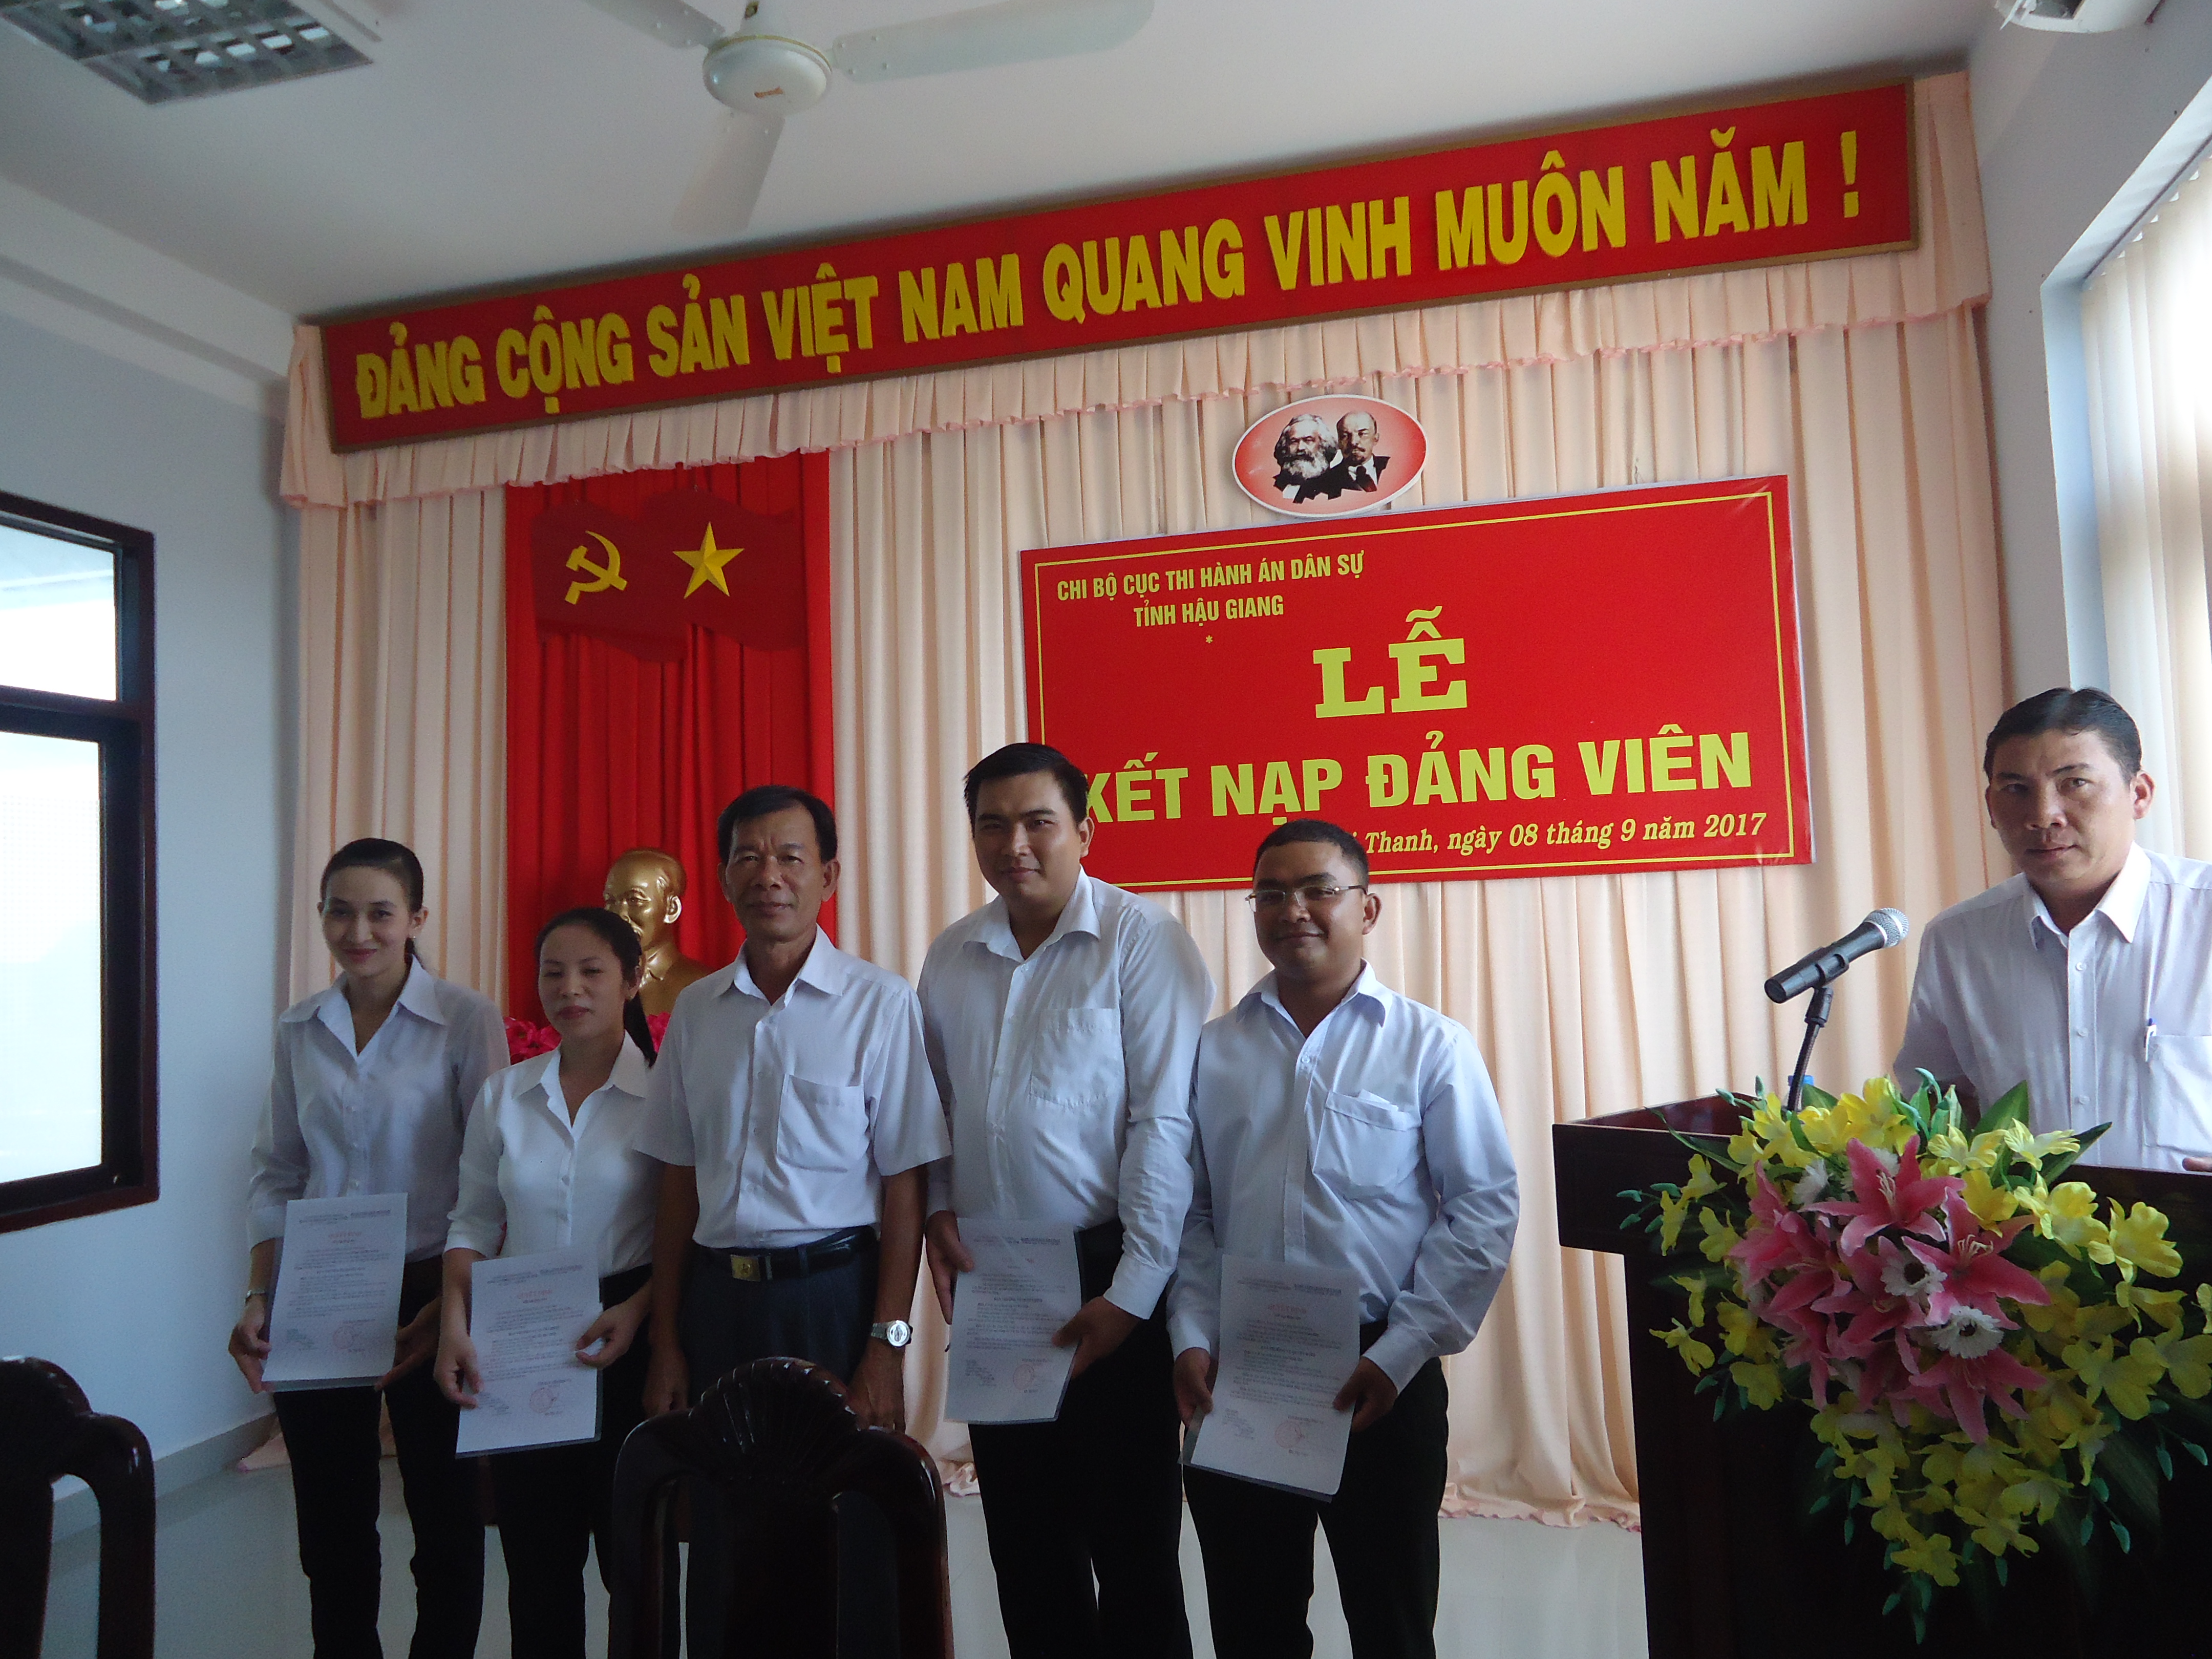 Chi bộ Cục Thi hành án dân sự tỉnh Hậu Giang tổ chức lễ kết nạp đảng cho đảng viên mới